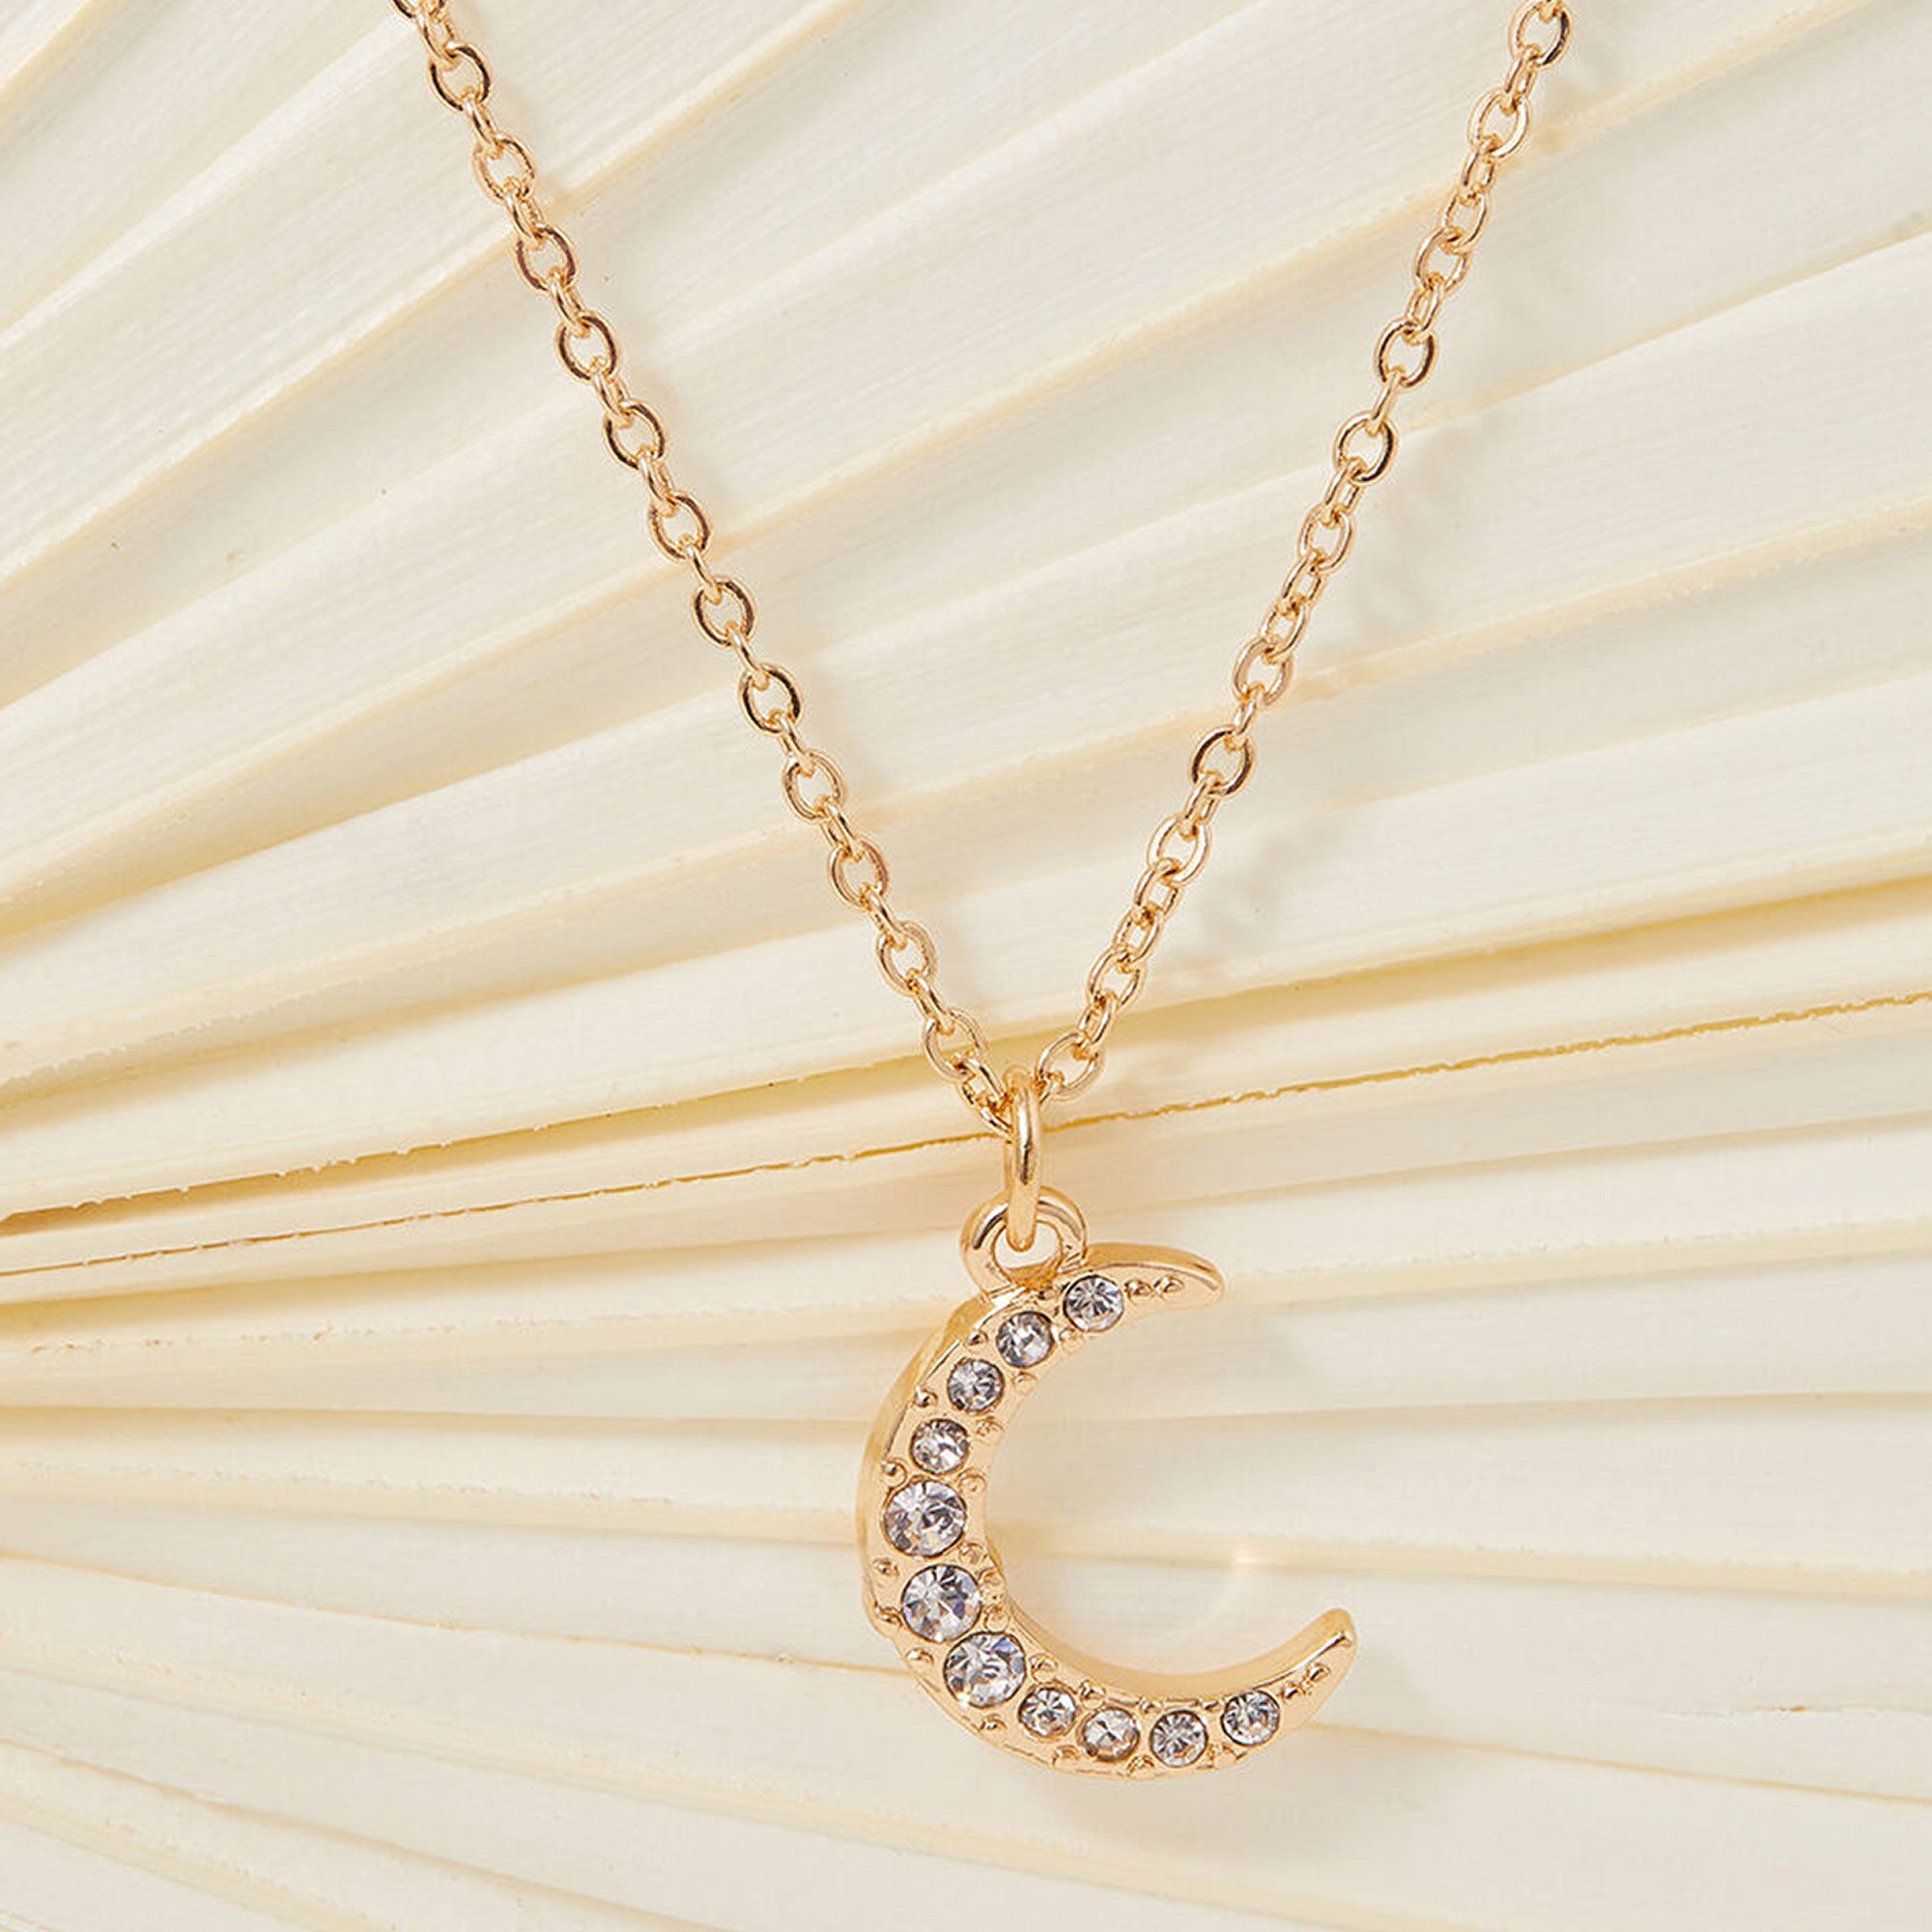 Accessorize London Women's Sparkle Moon Pendant Necklace